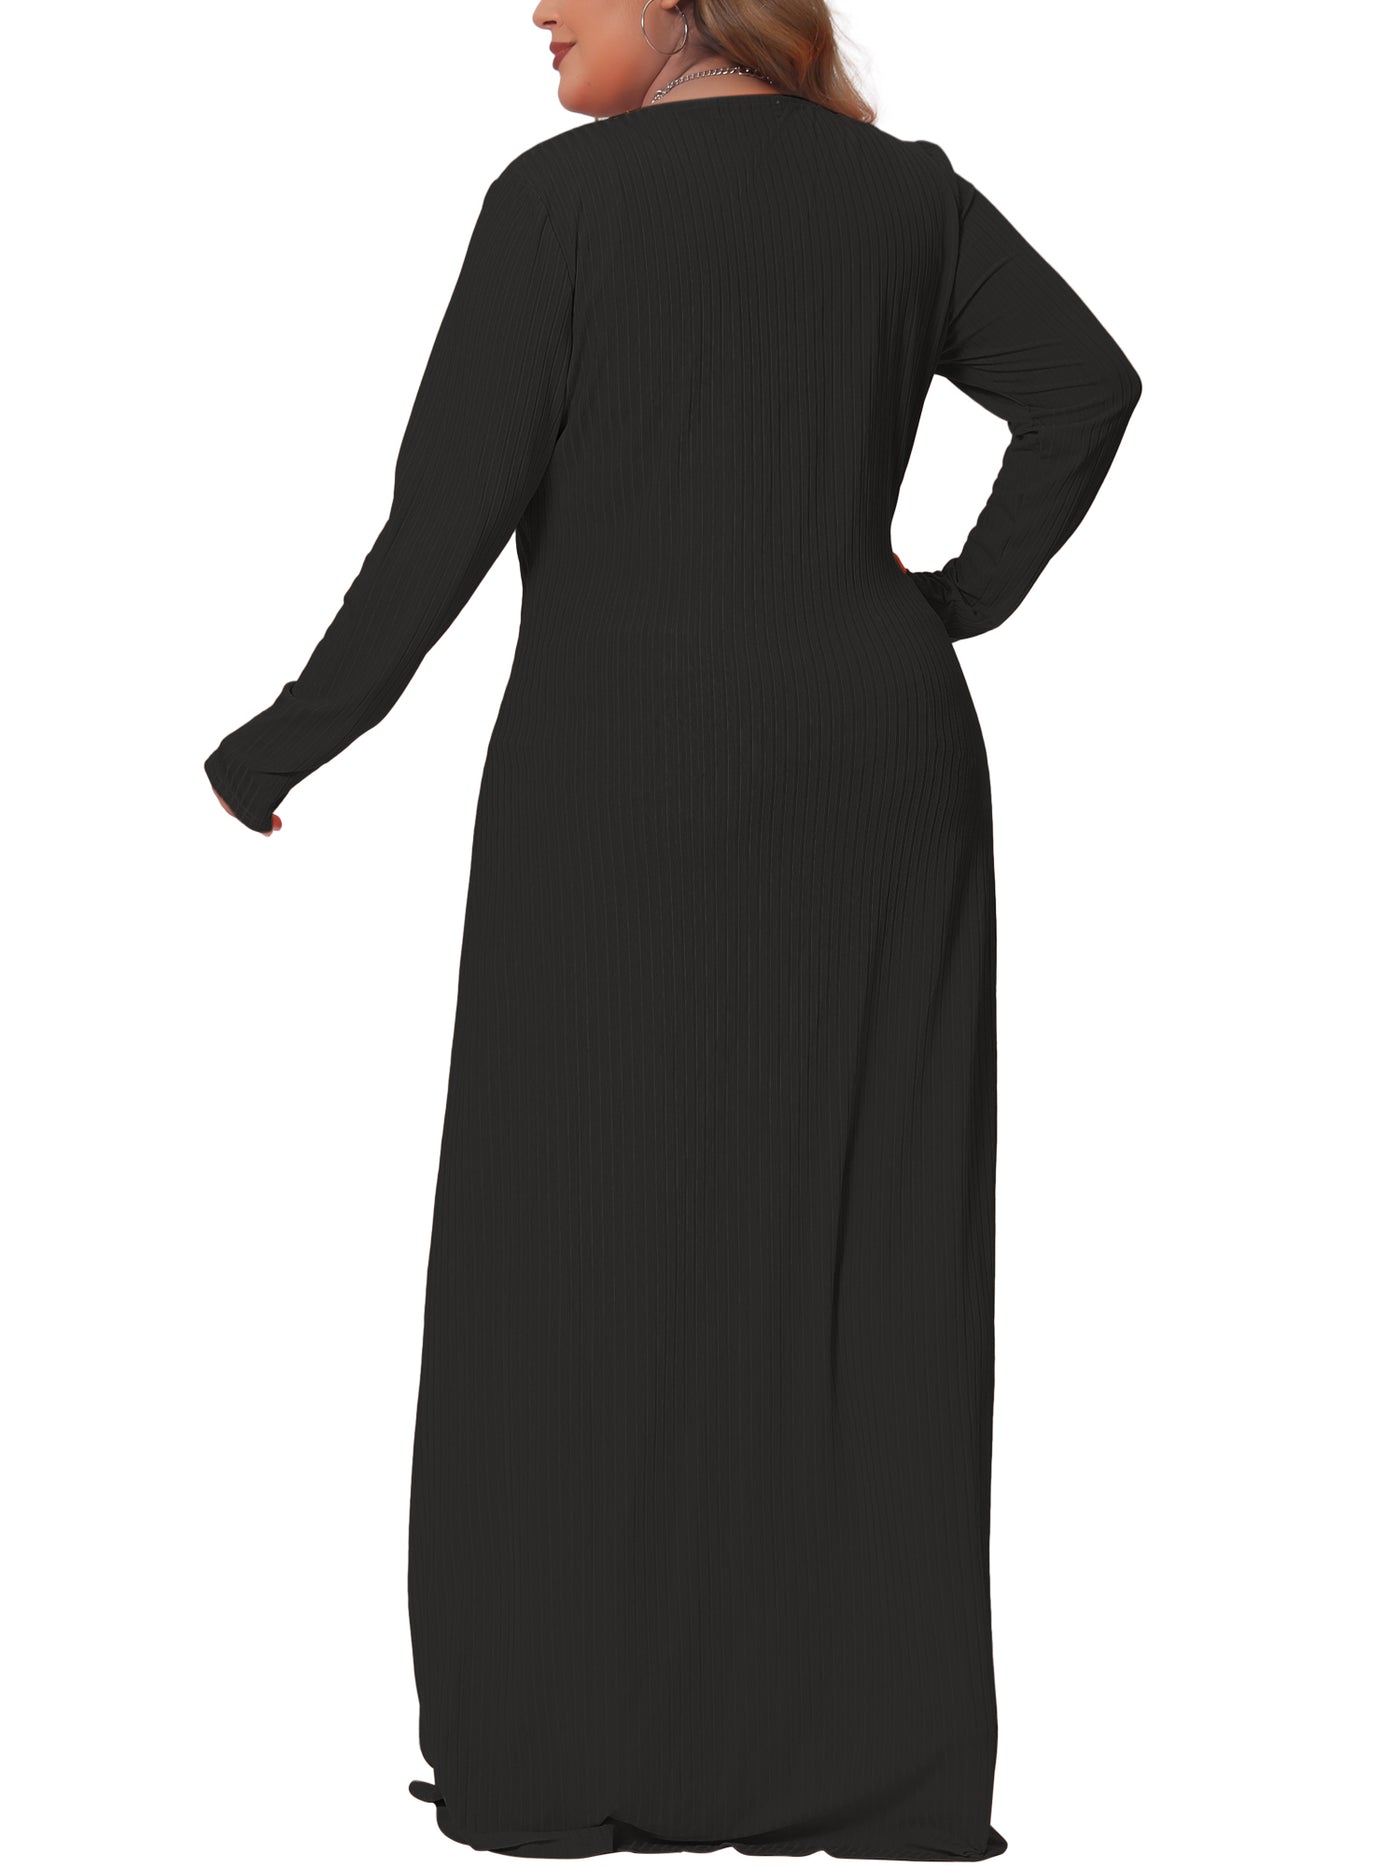 Bublédon Plus Size Dresses for Women Side Split Long Sleeve Button Down Cardigans Swimsuit Cover Ups Beach Dress